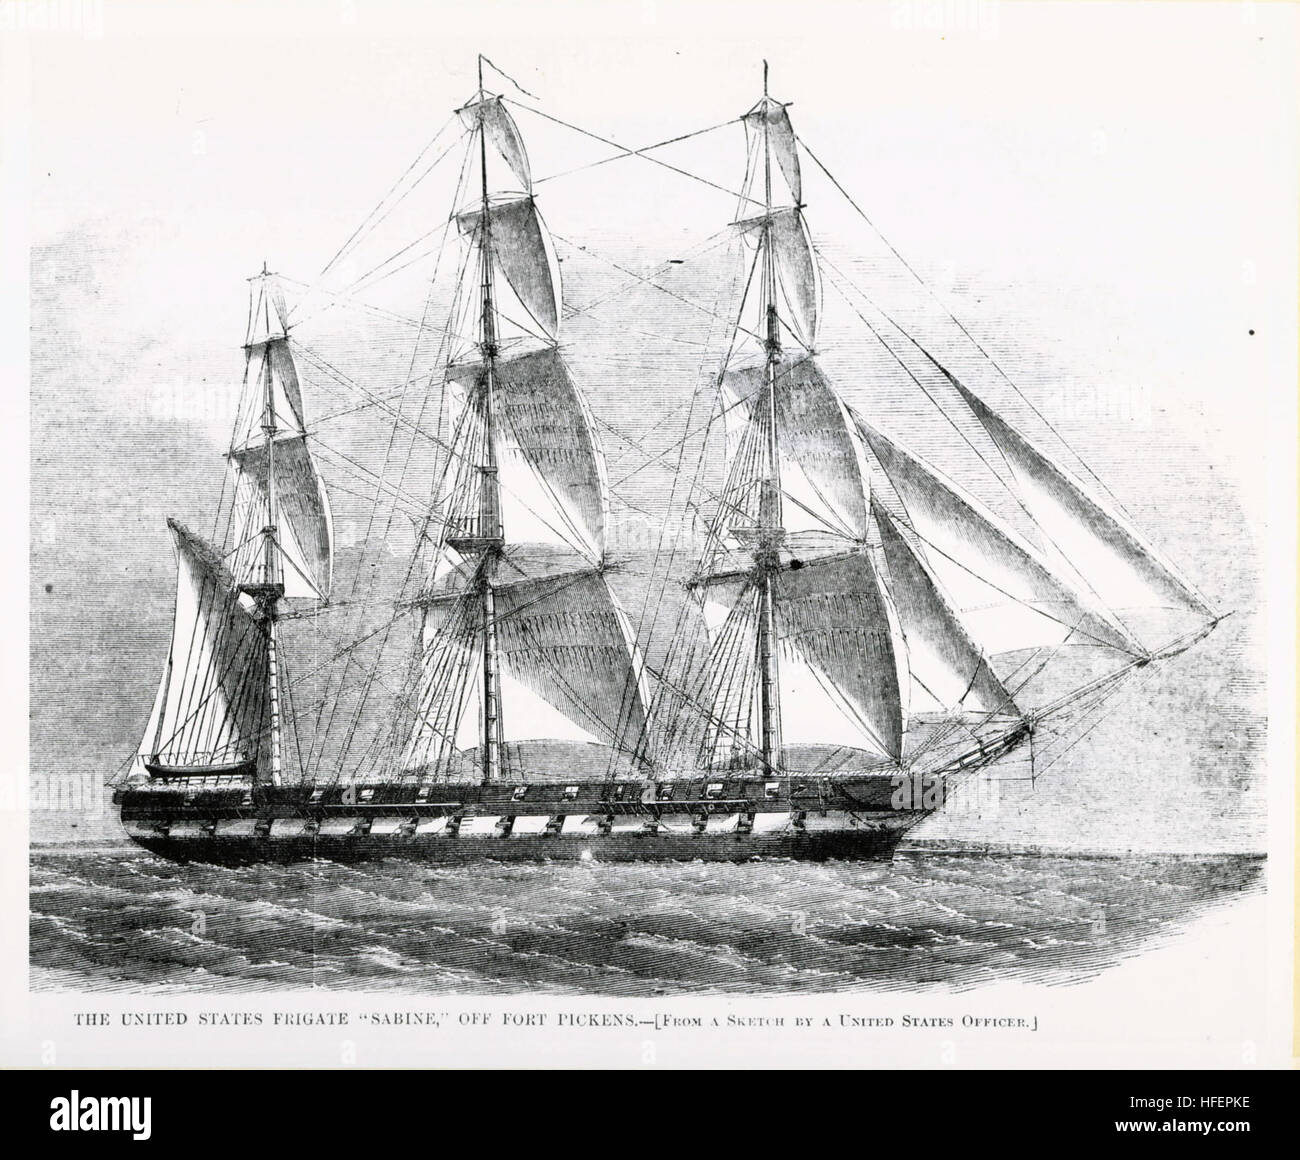 031020-S-0000X-001 Marina Centro histórico (foto de archivo) -- Período  grabado de la fragata USS Sabine (1855-1883) de la HarperÕs semanalmente,  16 de marzo de 1861. Dos oficiales militares estadounidenses viajó  recientemente en